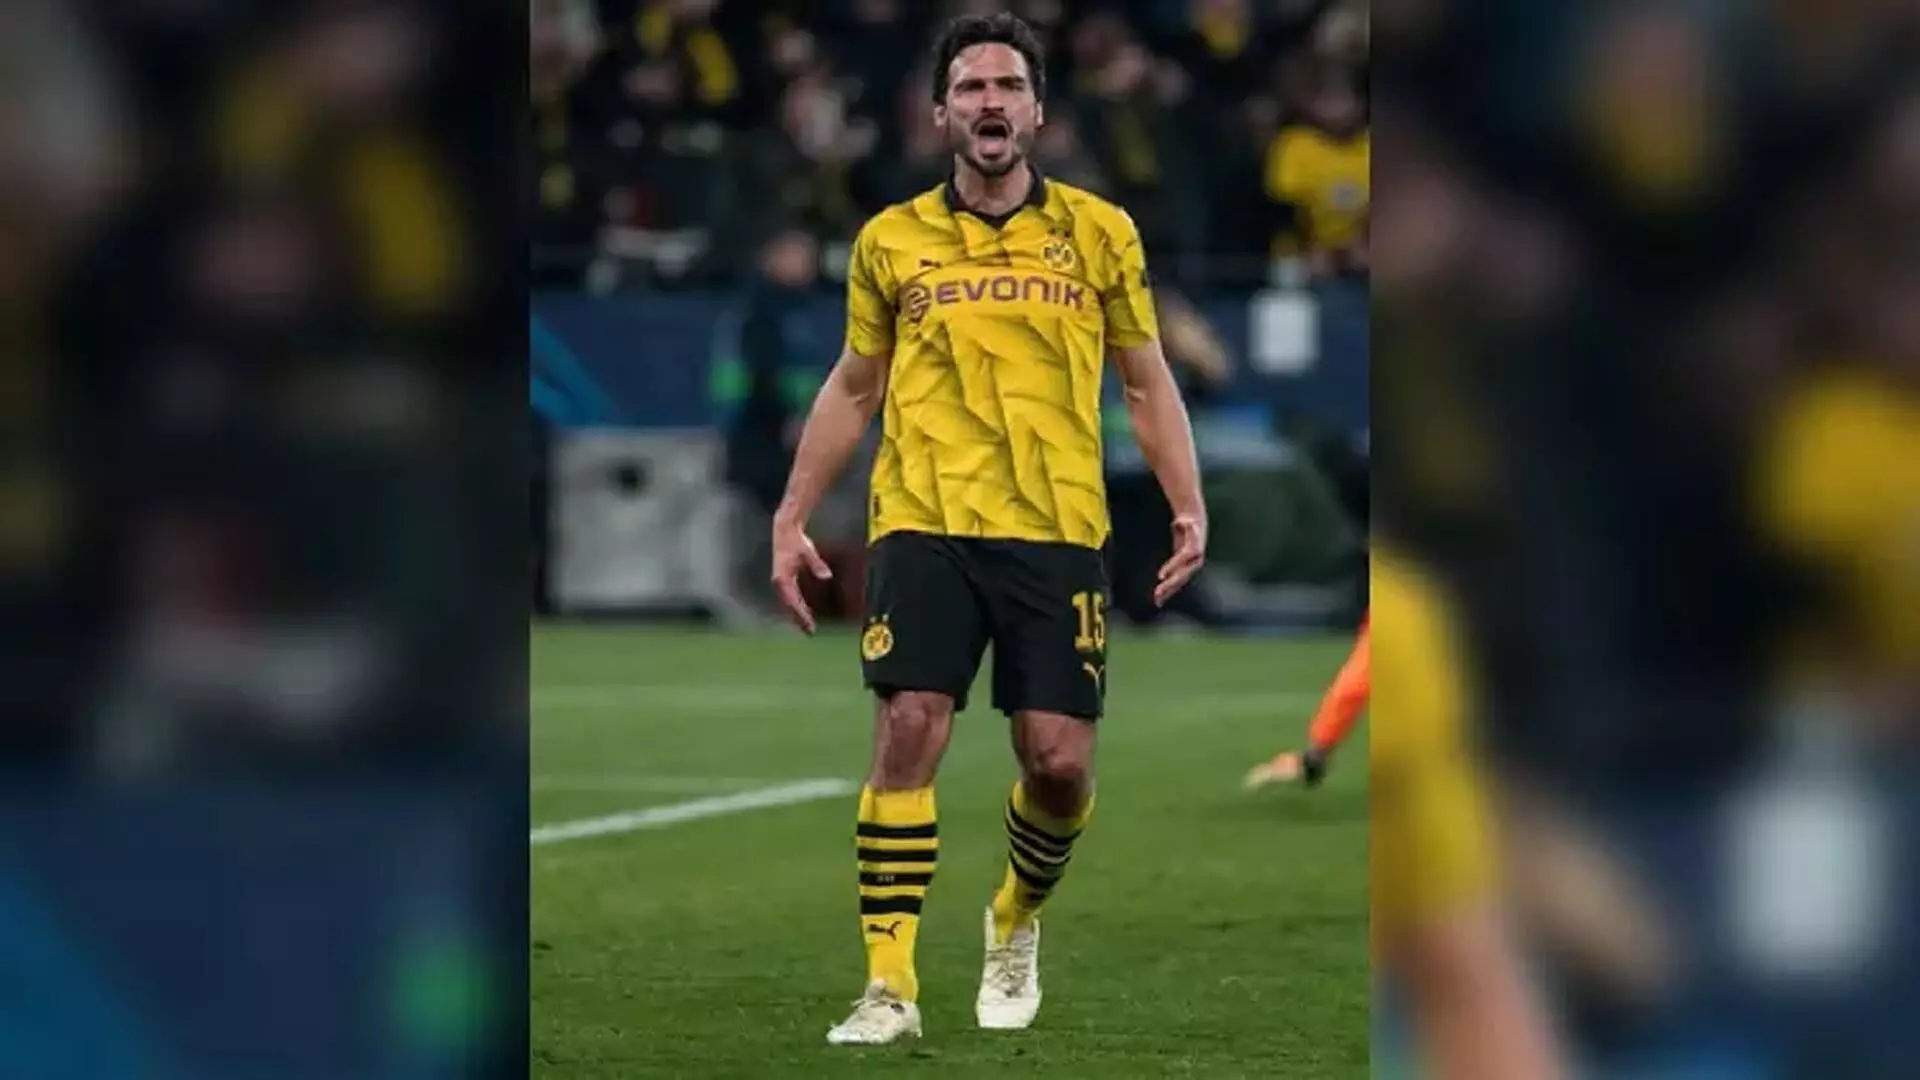 Borussia डॉर्टमुंड ने घोषणा की कि मैट्स हम्मेल्स स्वतंत्र एजेंट के रूप में क्लब छोड़ देंगे